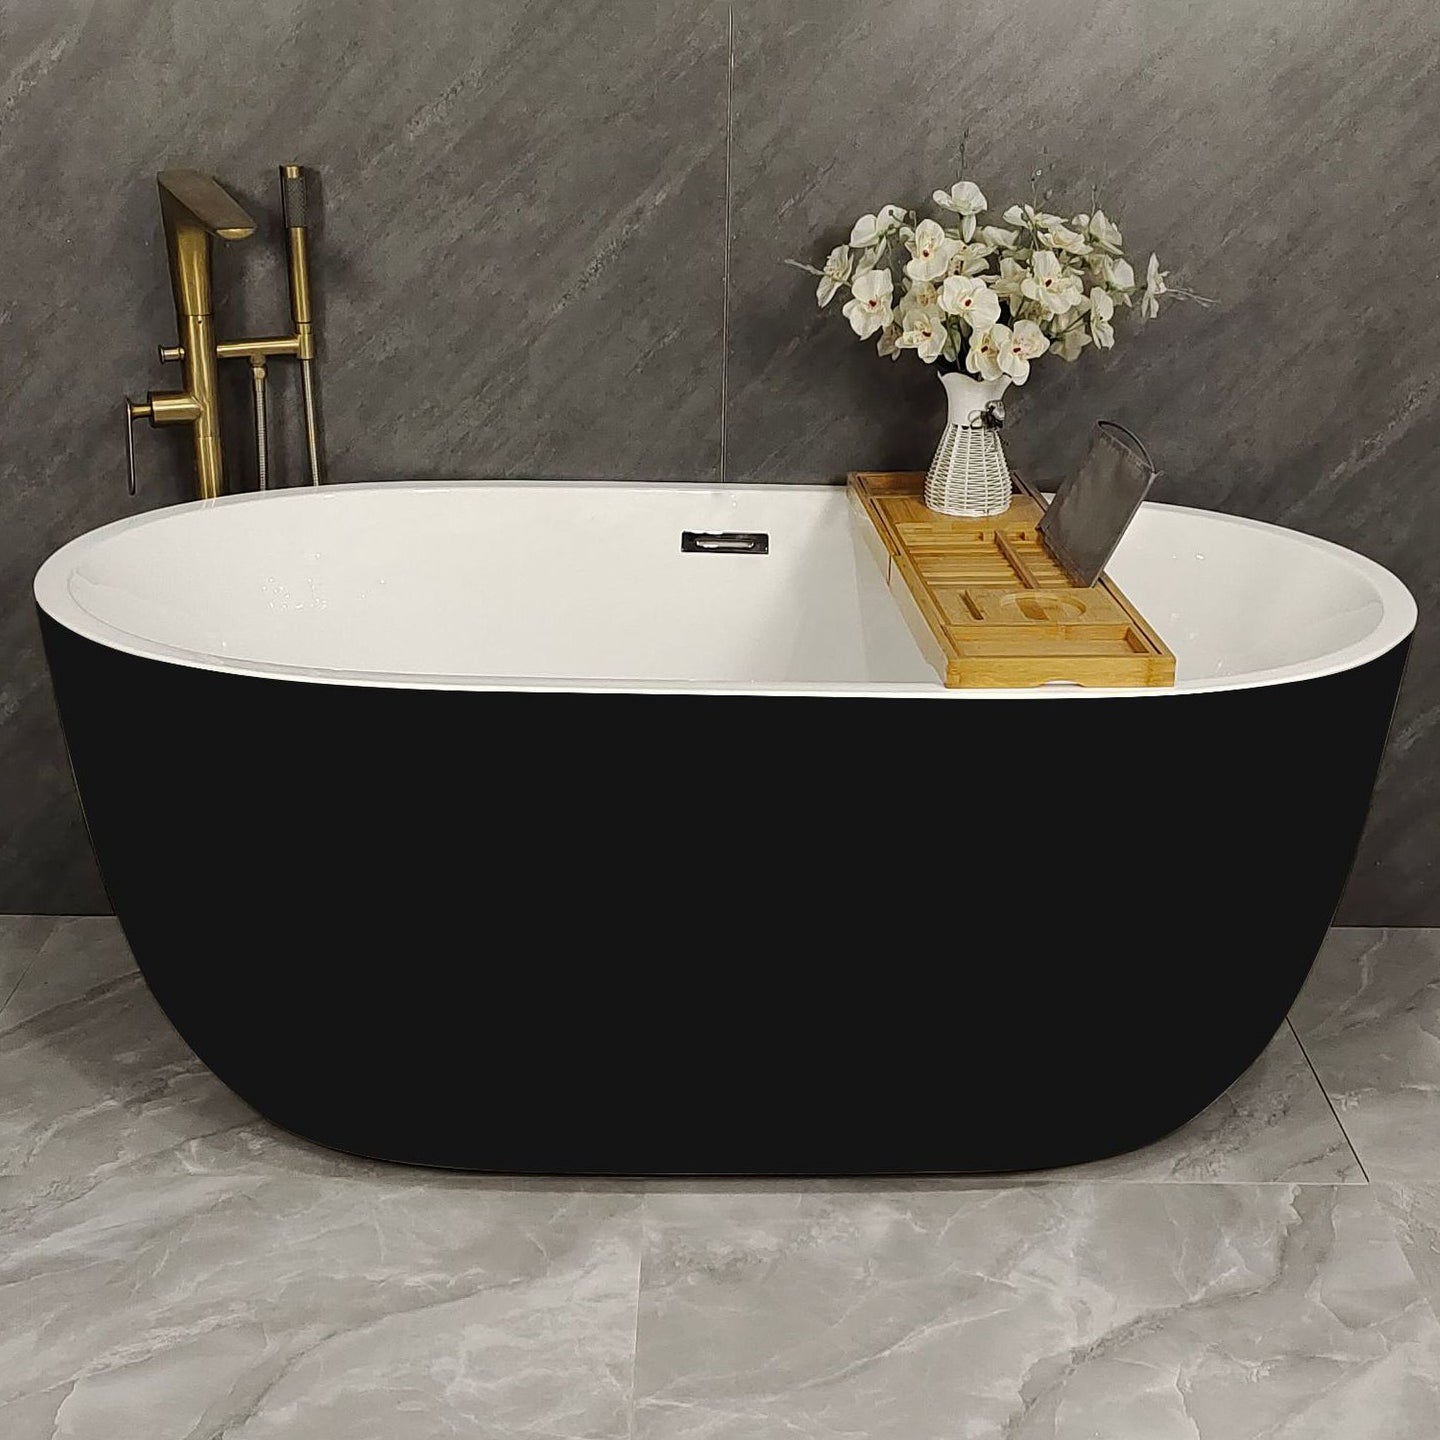 Acrylic Freestanding Soaking Bathtub Antique Finish Oval Modern Bath Tub